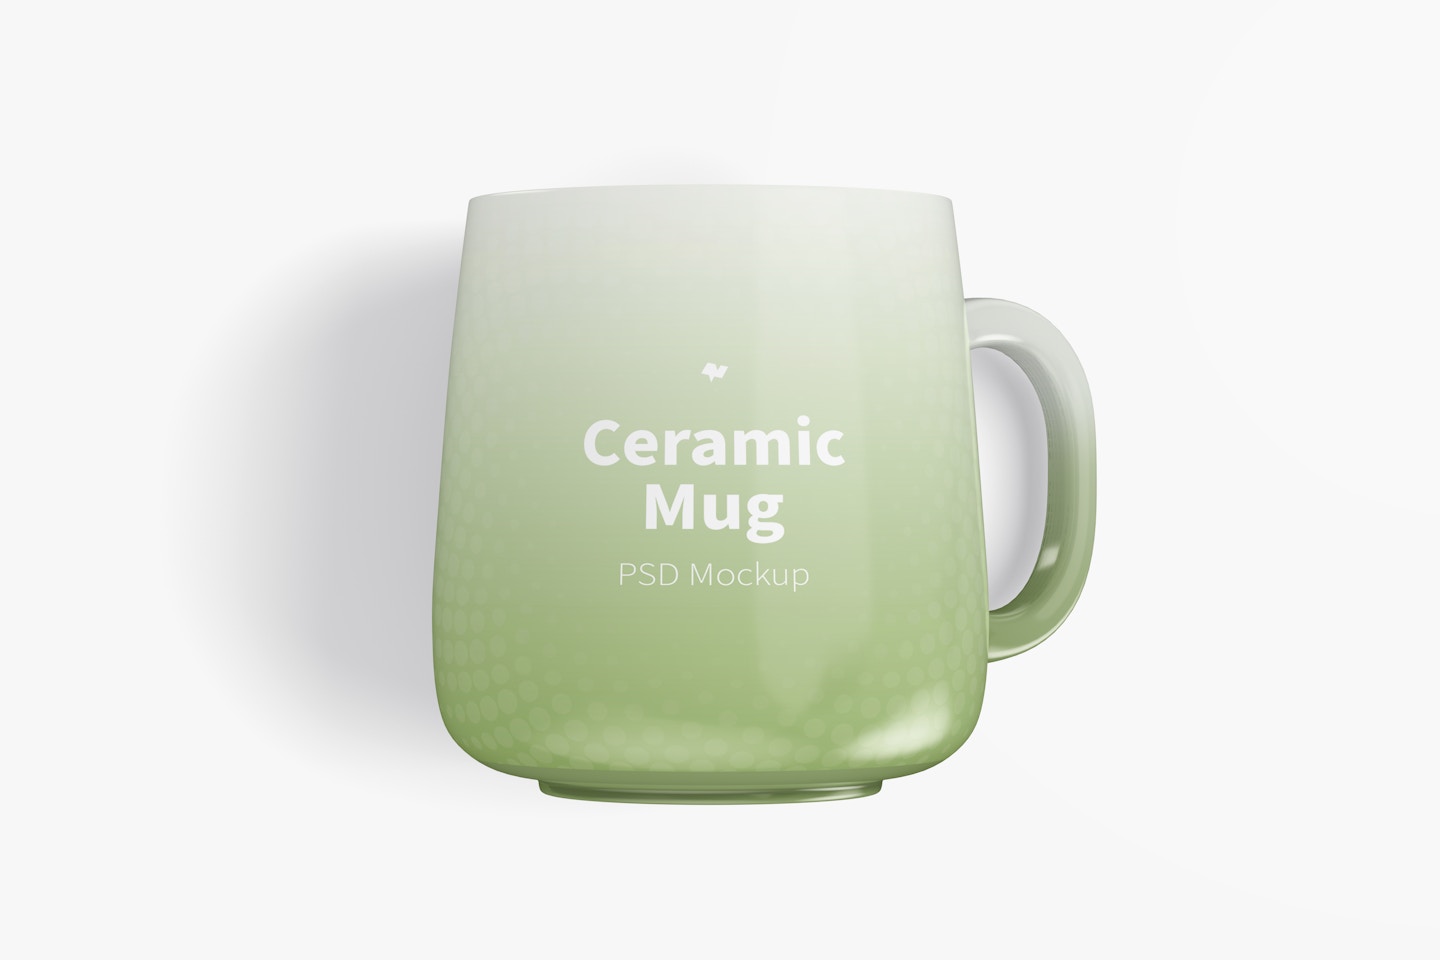 12.2 oz Ceramic Mug Mockup, Top View